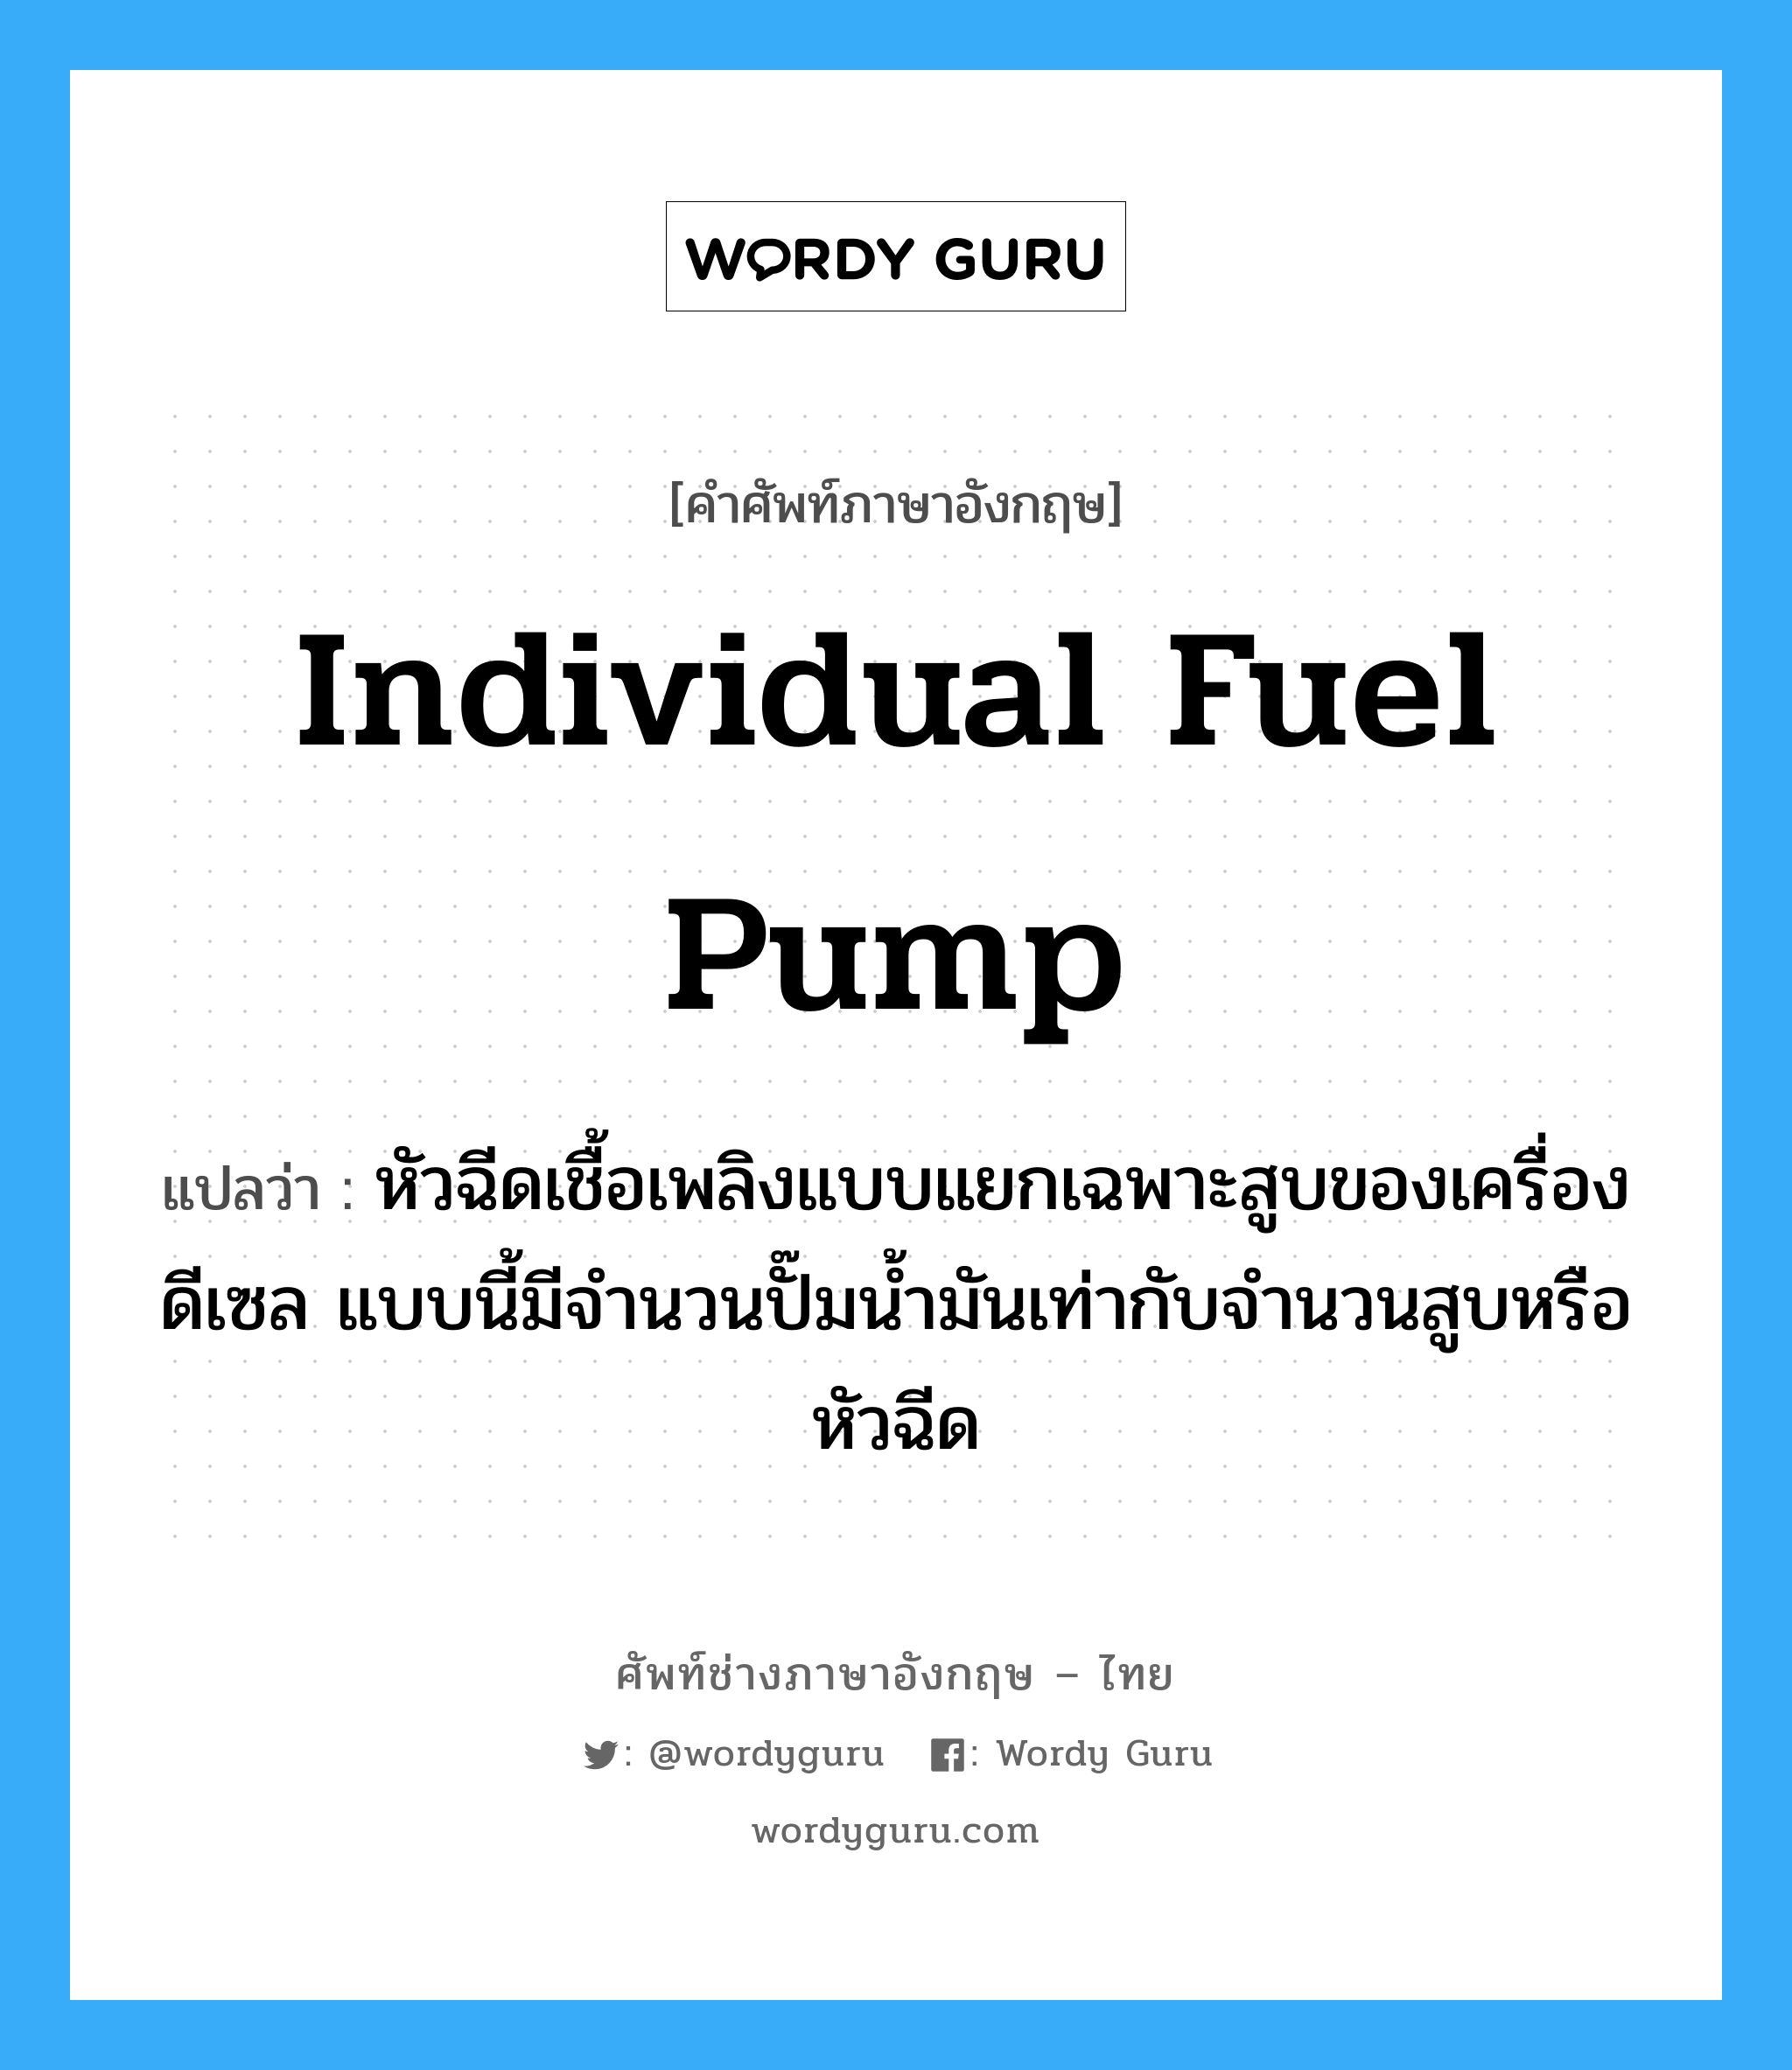 individual fuel pump แปลว่า?, คำศัพท์ช่างภาษาอังกฤษ - ไทย individual fuel pump คำศัพท์ภาษาอังกฤษ individual fuel pump แปลว่า หัวฉีดเชื้อเพลิงแบบแยกเฉพาะสูบของเครื่องดีเซล แบบนี้มีจำนวนปั๊มน้ำมันเท่ากับจำนวนสูบหรือหัวฉีด